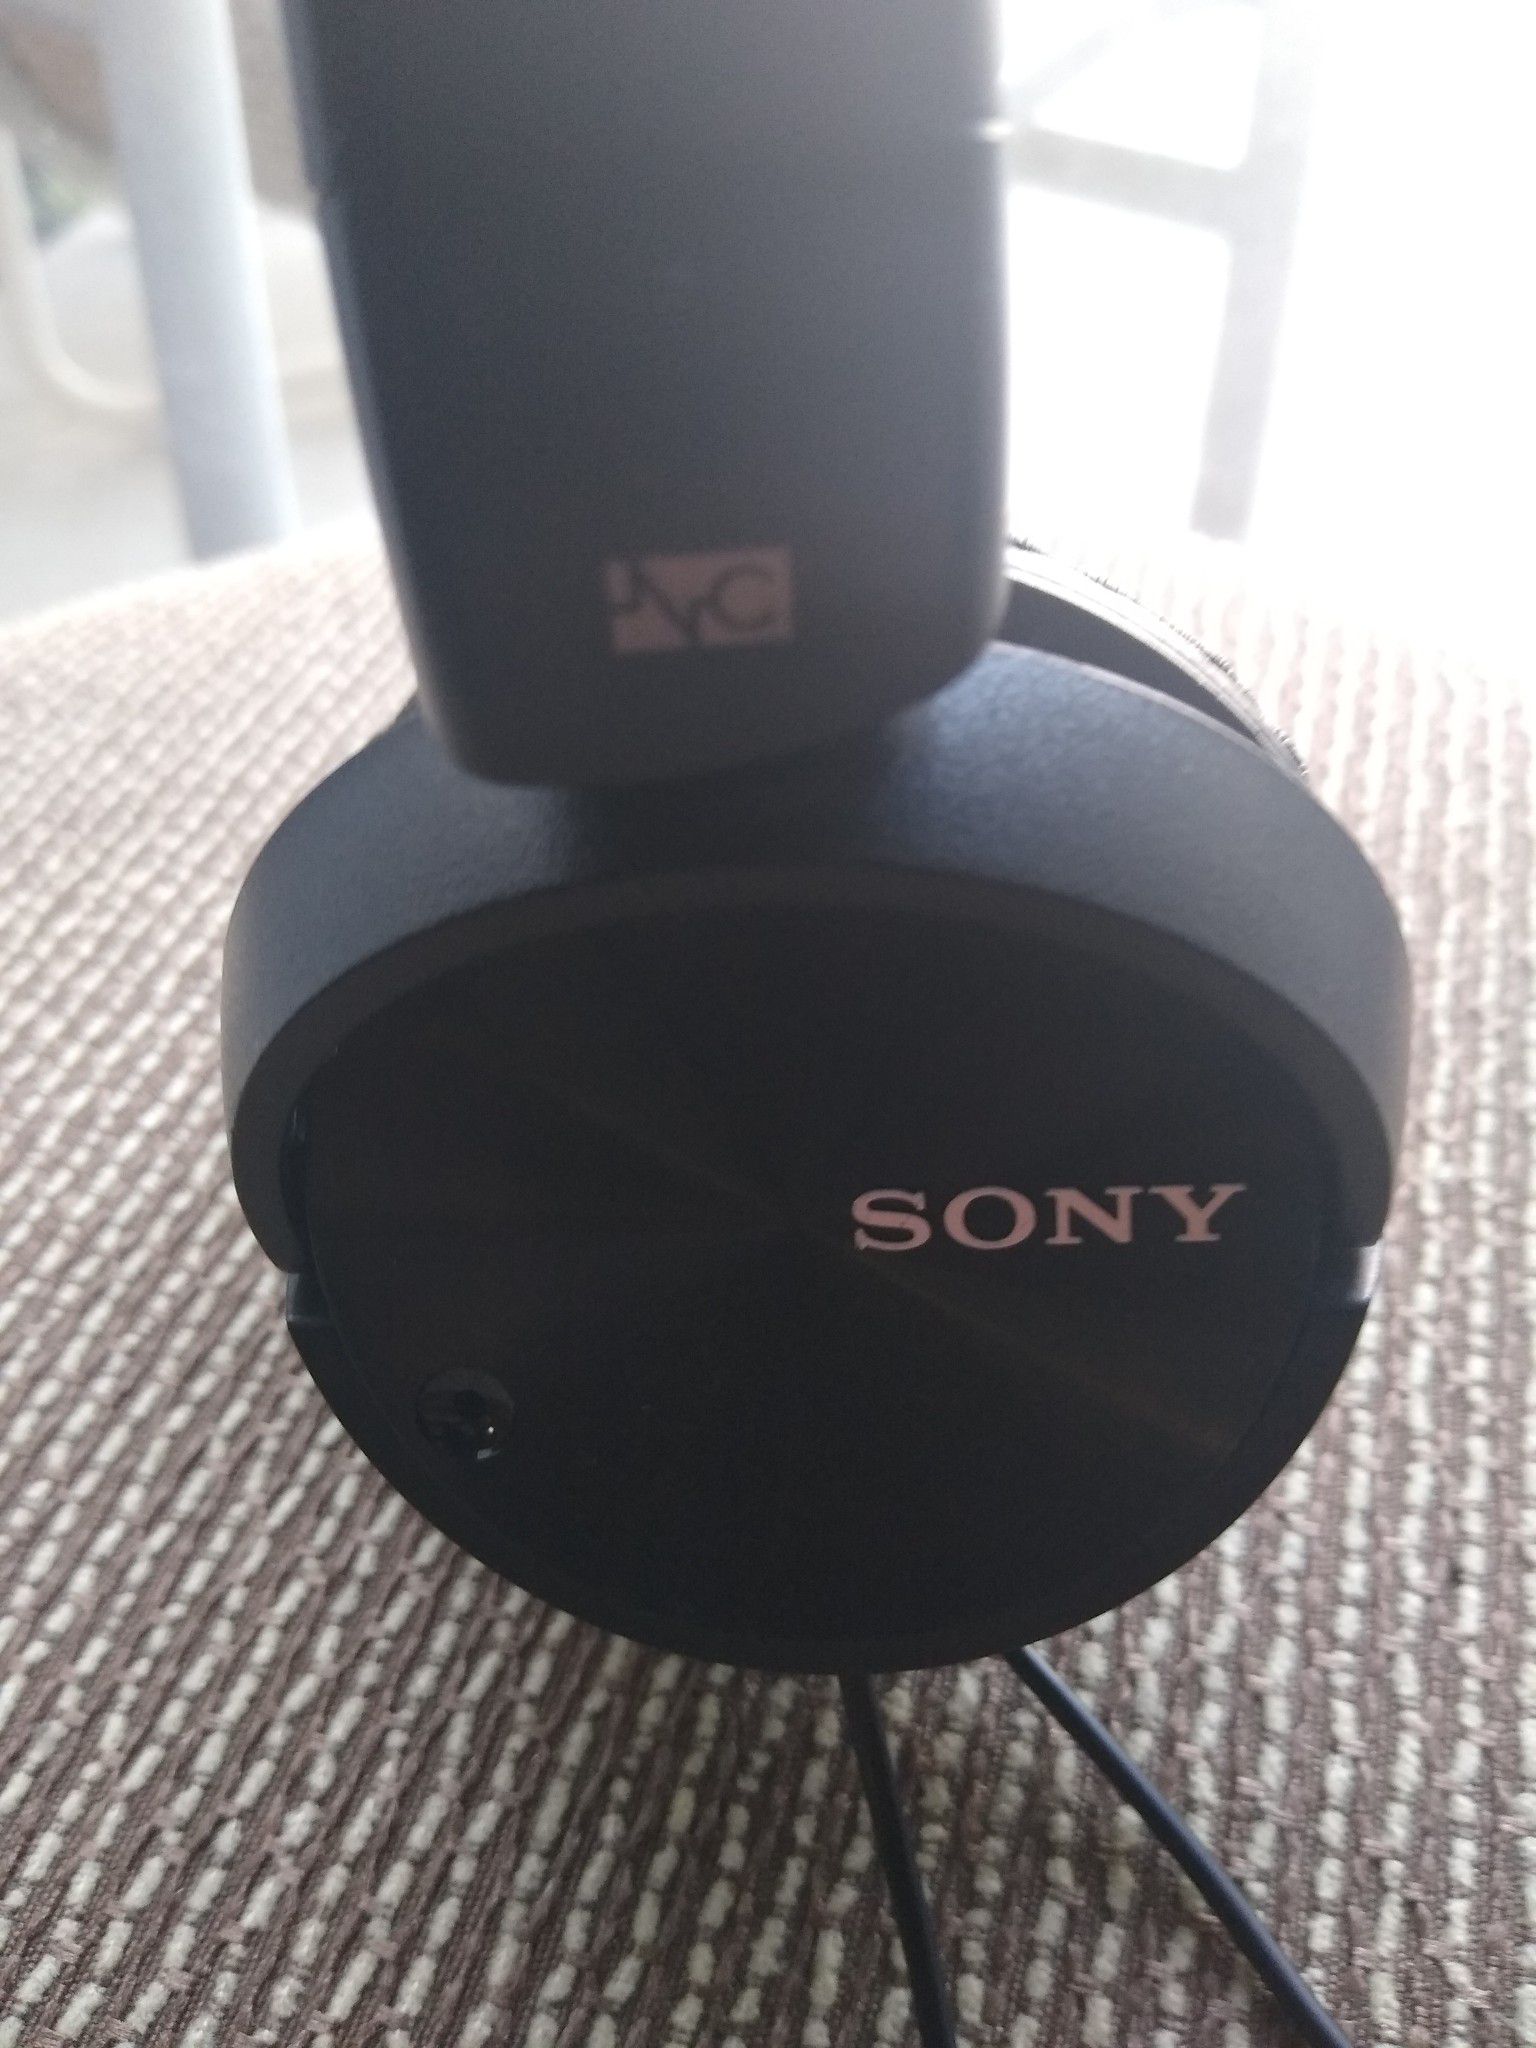 Sony headphones with mic $15